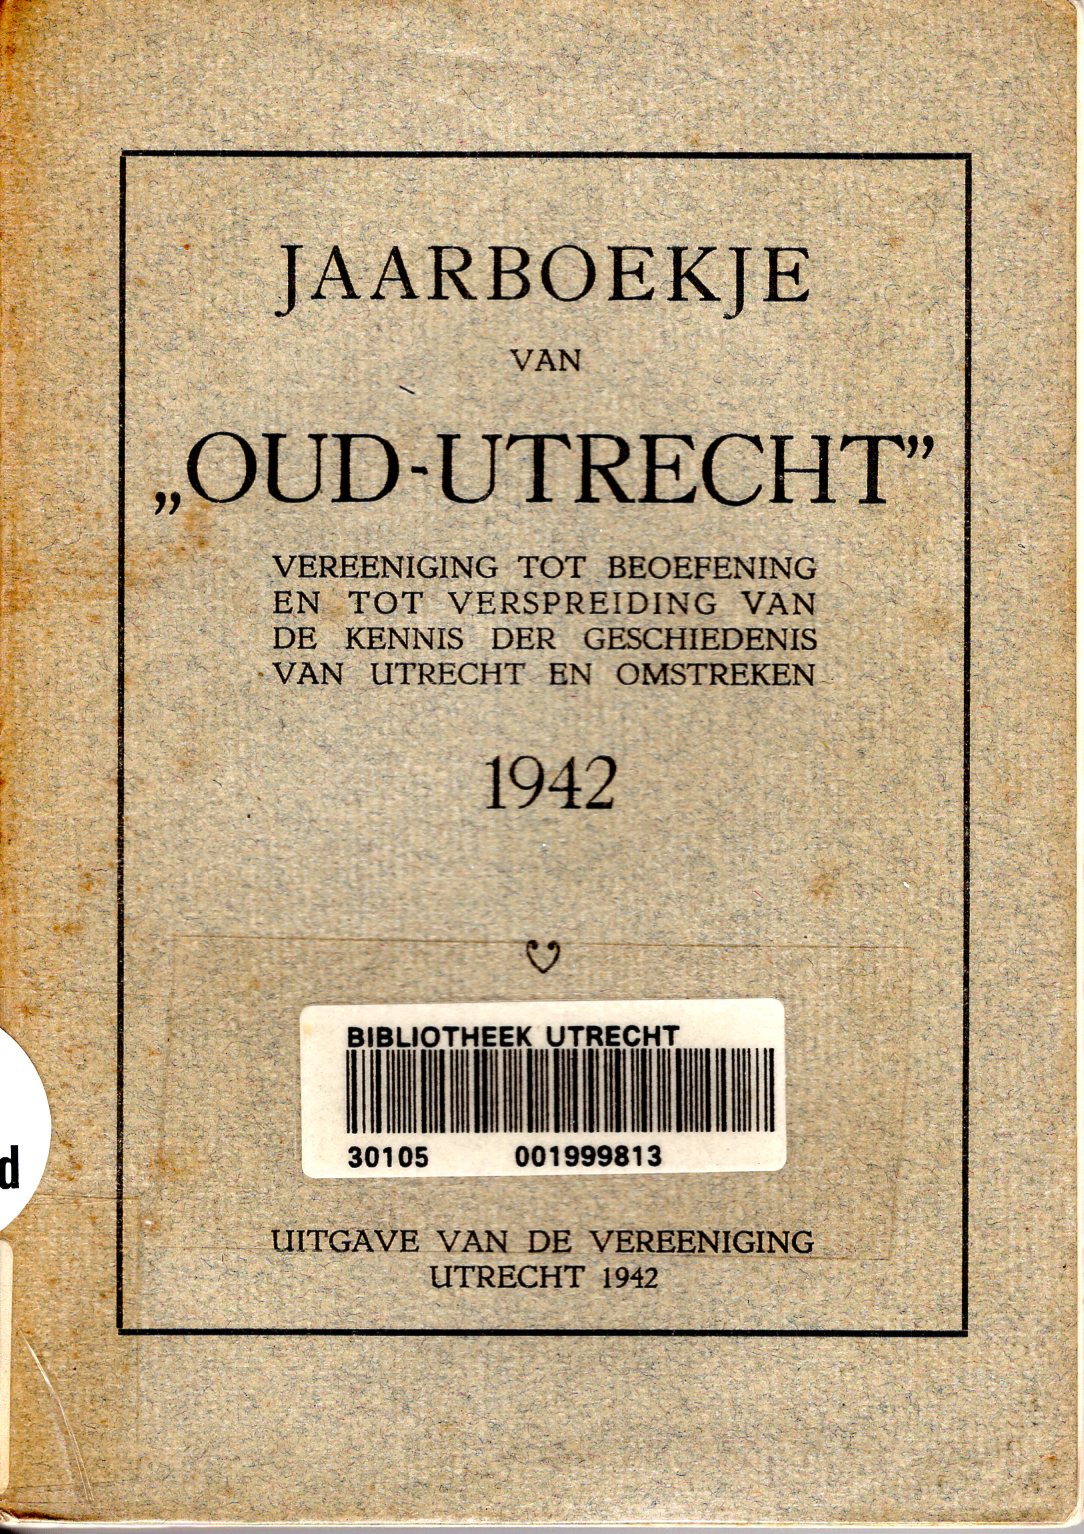 Jaarboekje Oud Utrecht 1942